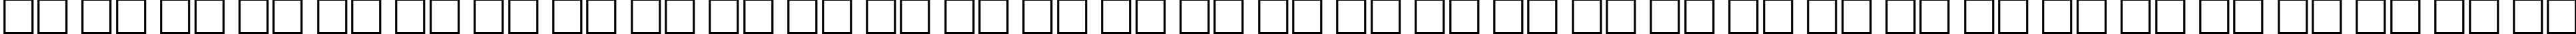 Пример написания русского алфавита шрифтом Tijuana Medium